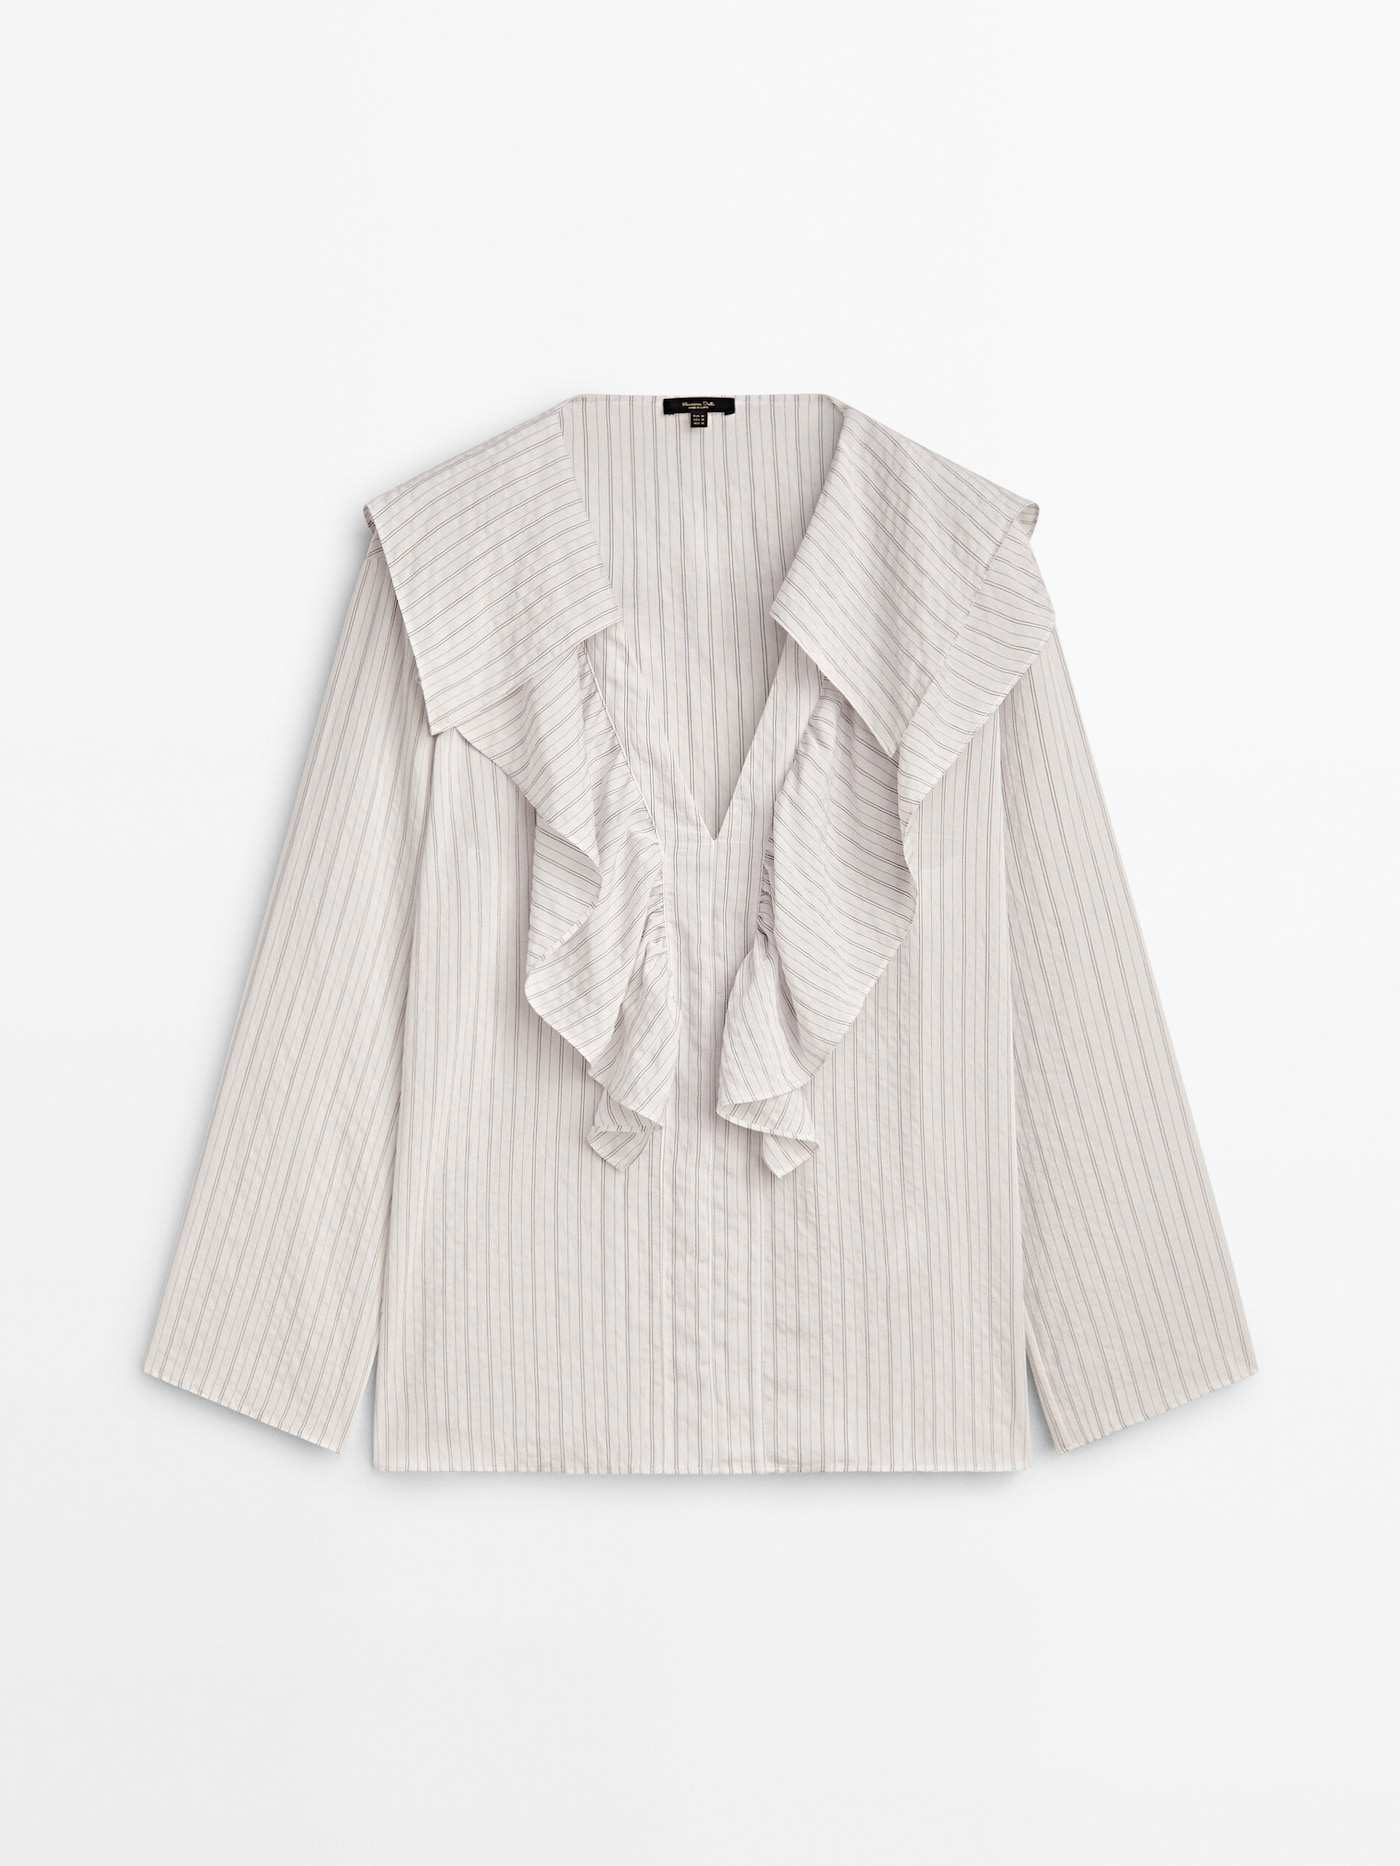 La blusa romántica de estilo 'coquette' perfecta para ir a la oficina con tu traje de chaqueta.